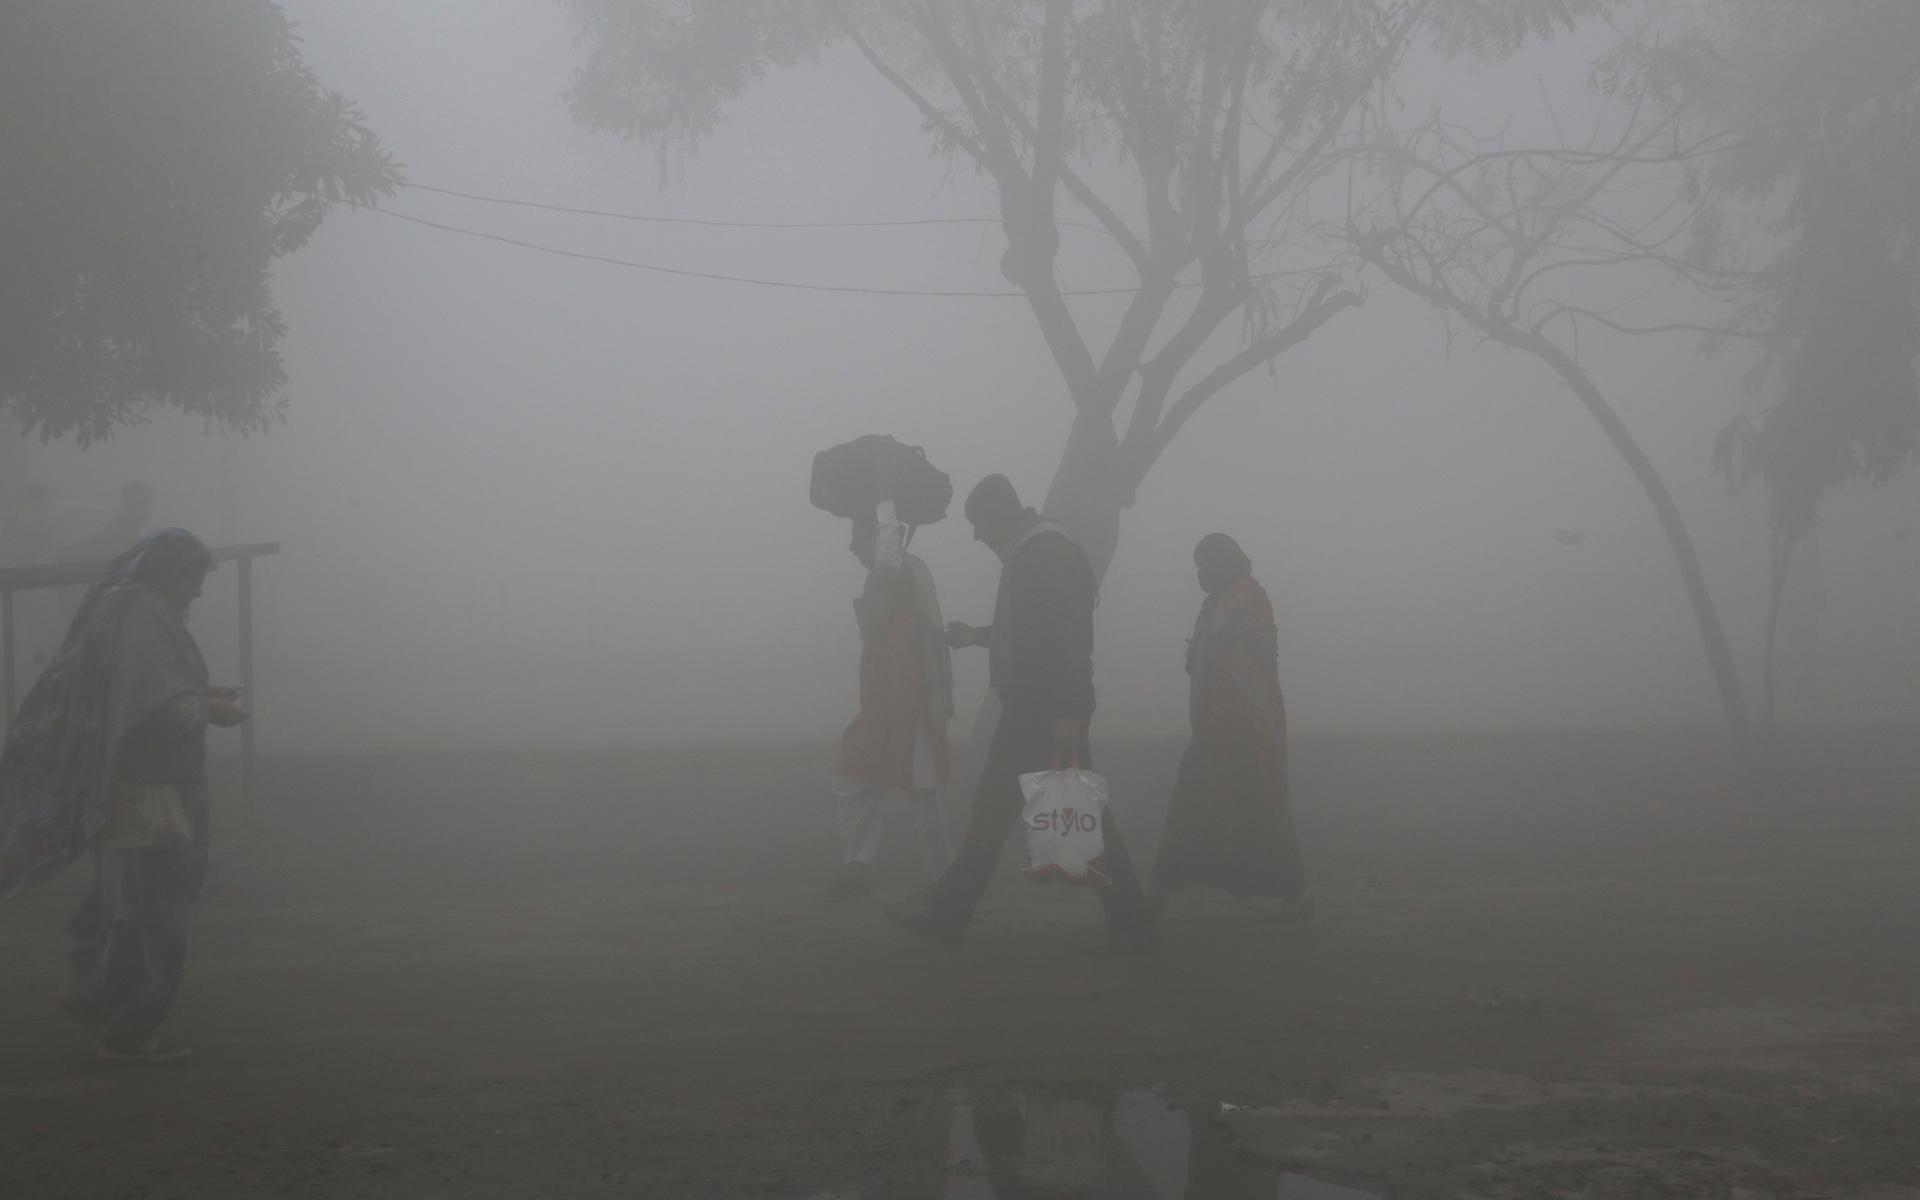 Invånarna i staden upplever andnöd, stickande ögon och illamående från den tjocka förorenade smogen. 